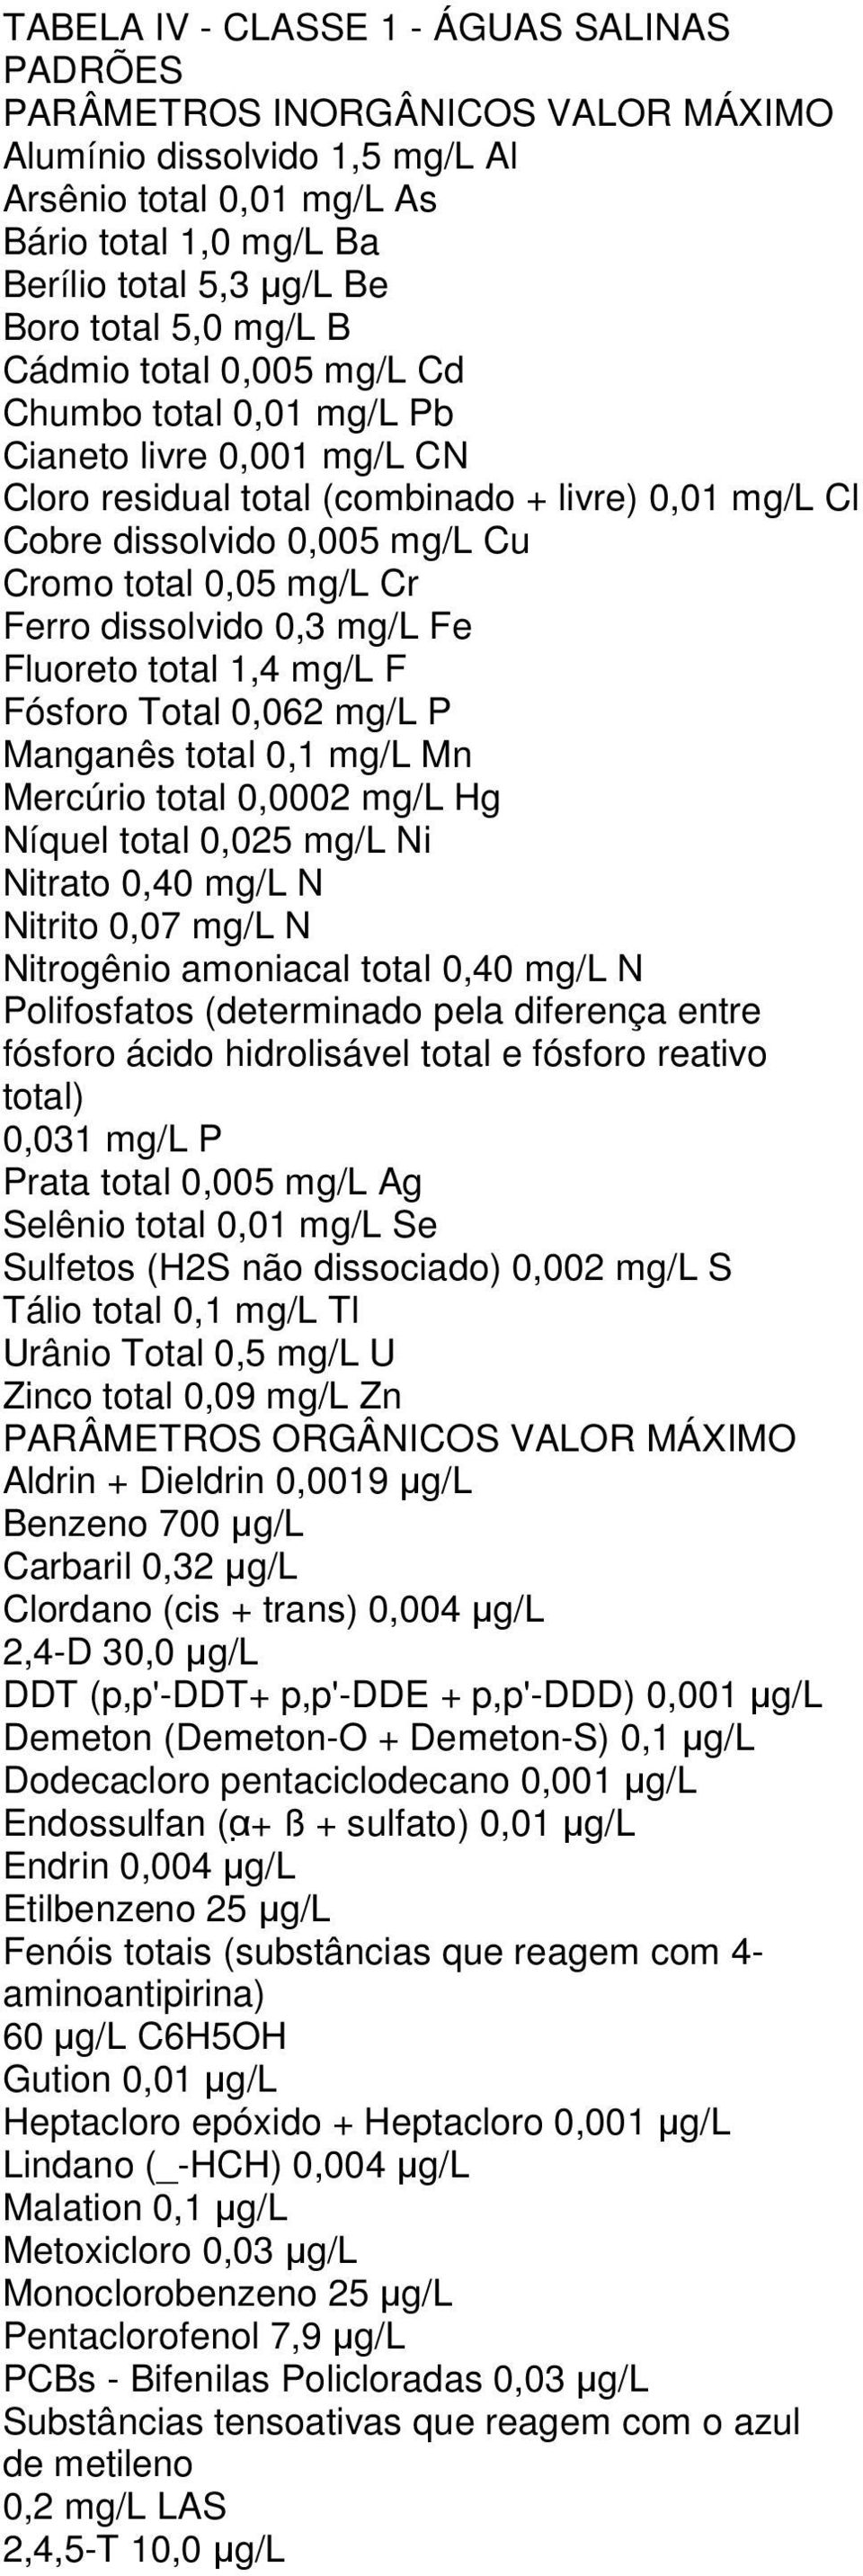 mg/l Cr Ferro dissolvido 0,3 mg/l Fe Fluoreto total 1,4 mg/l F Fósforo Total 0,062 mg/l P Manganês total 0,1 mg/l Mn Mercúrio total 0,0002 mg/l Hg Níquel total 0,025 mg/l Ni Nitrato 0,40 mg/l N